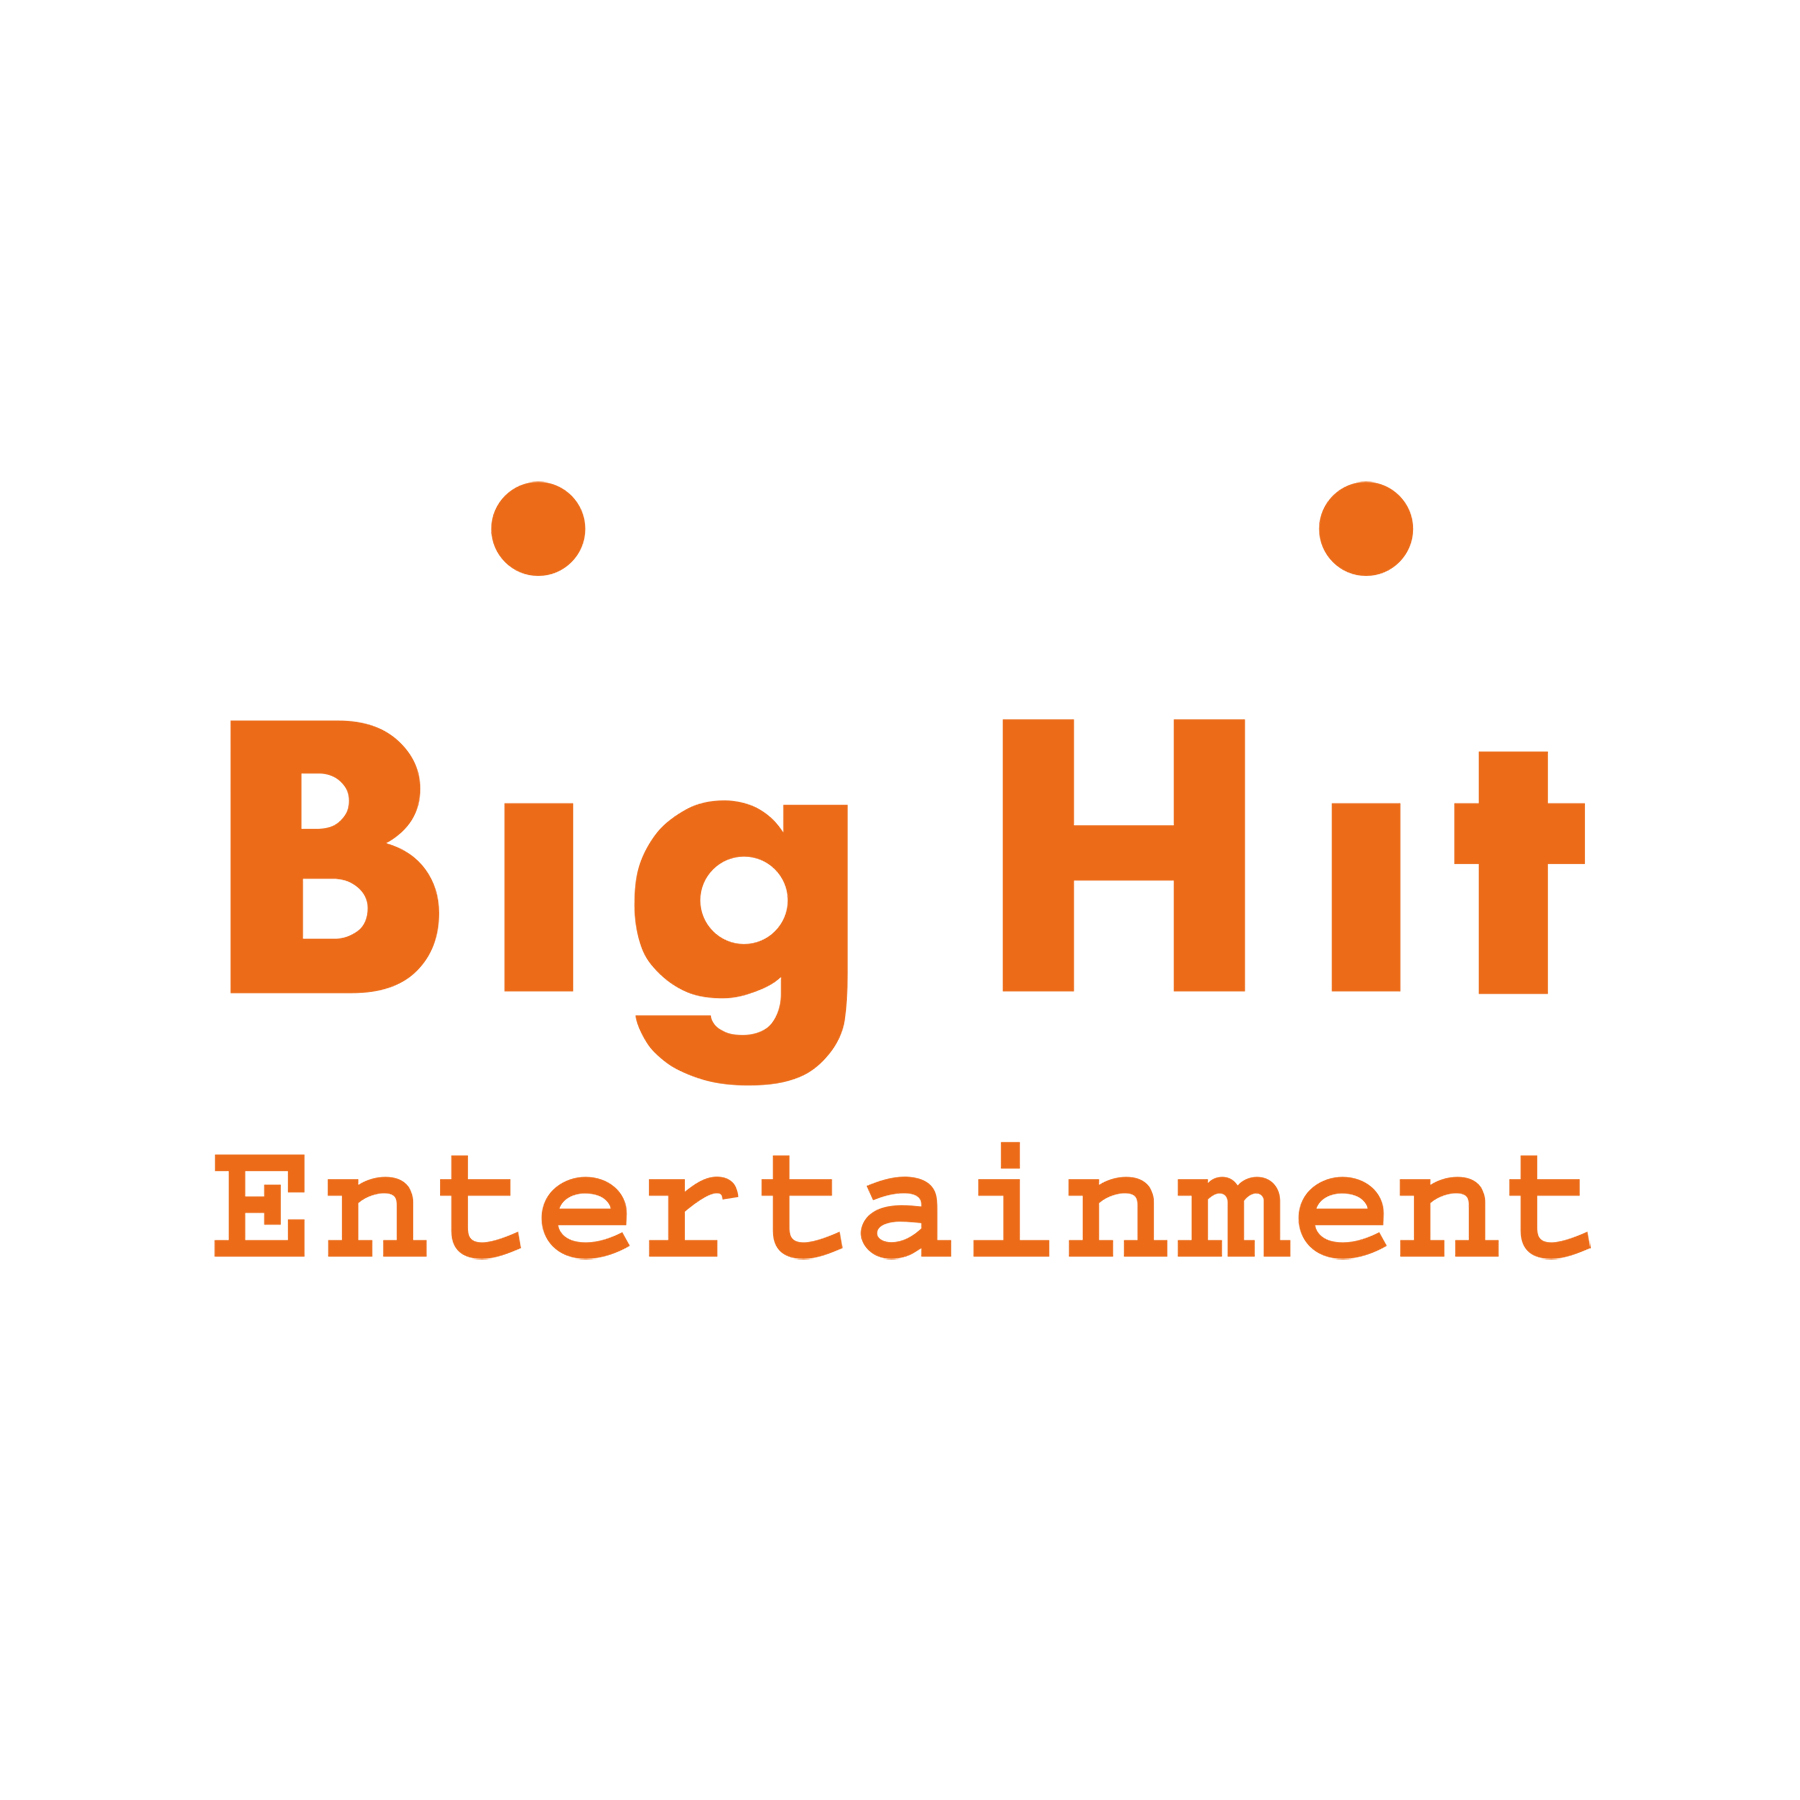 Хайб интертеймент. Big Hit Entertainment логотип. Хит Энтертейнмент логотип. Лейбл Биг хит. Хайб Ентертаймент логотип.